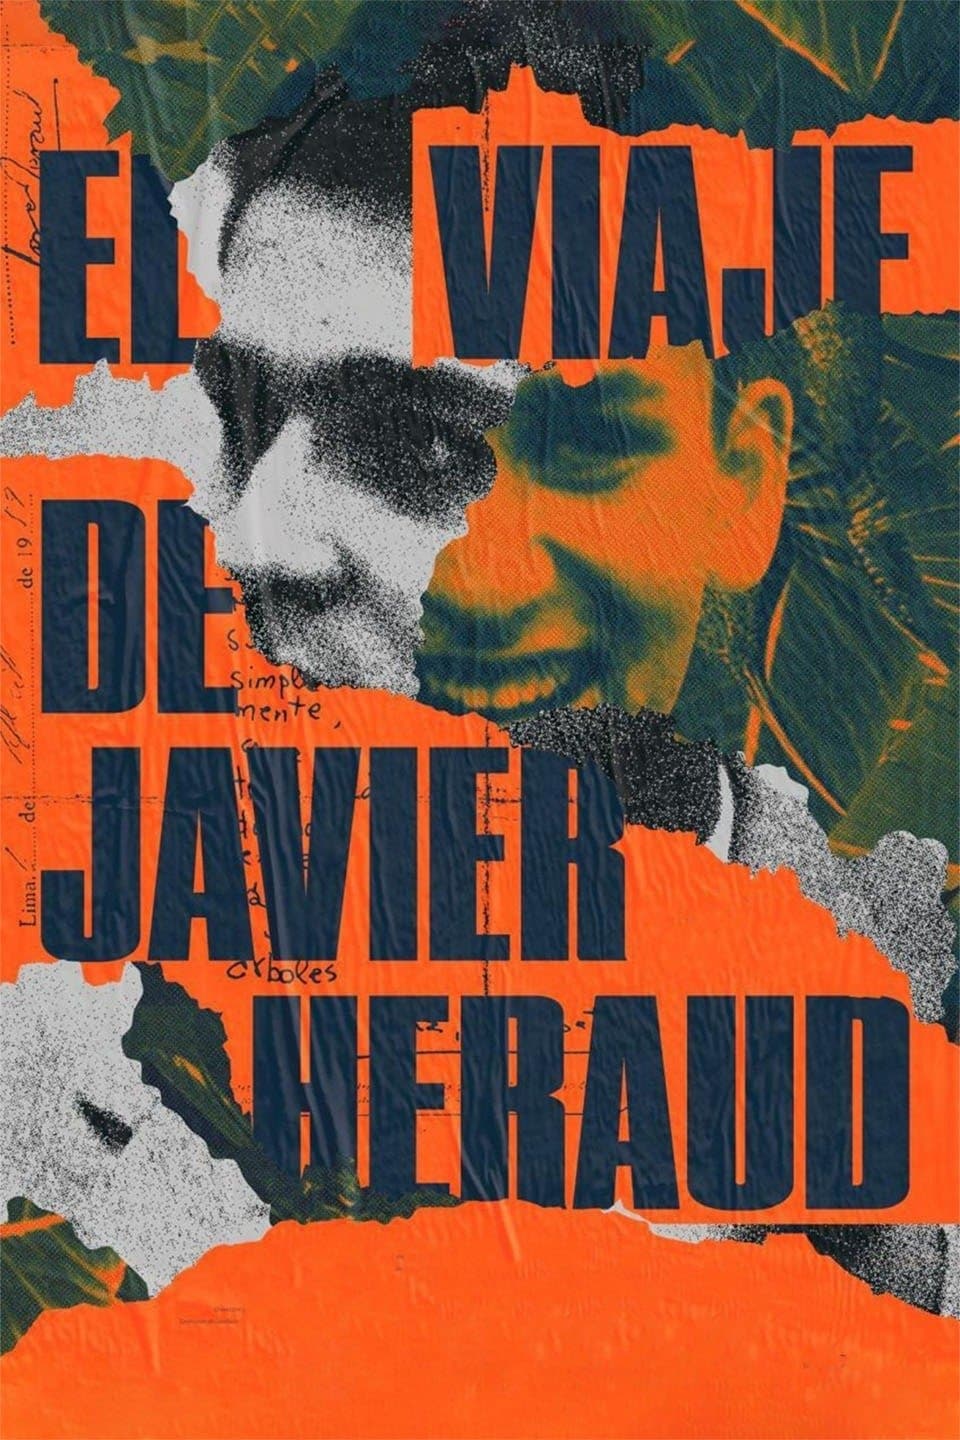 The Journey of Javier Heraud